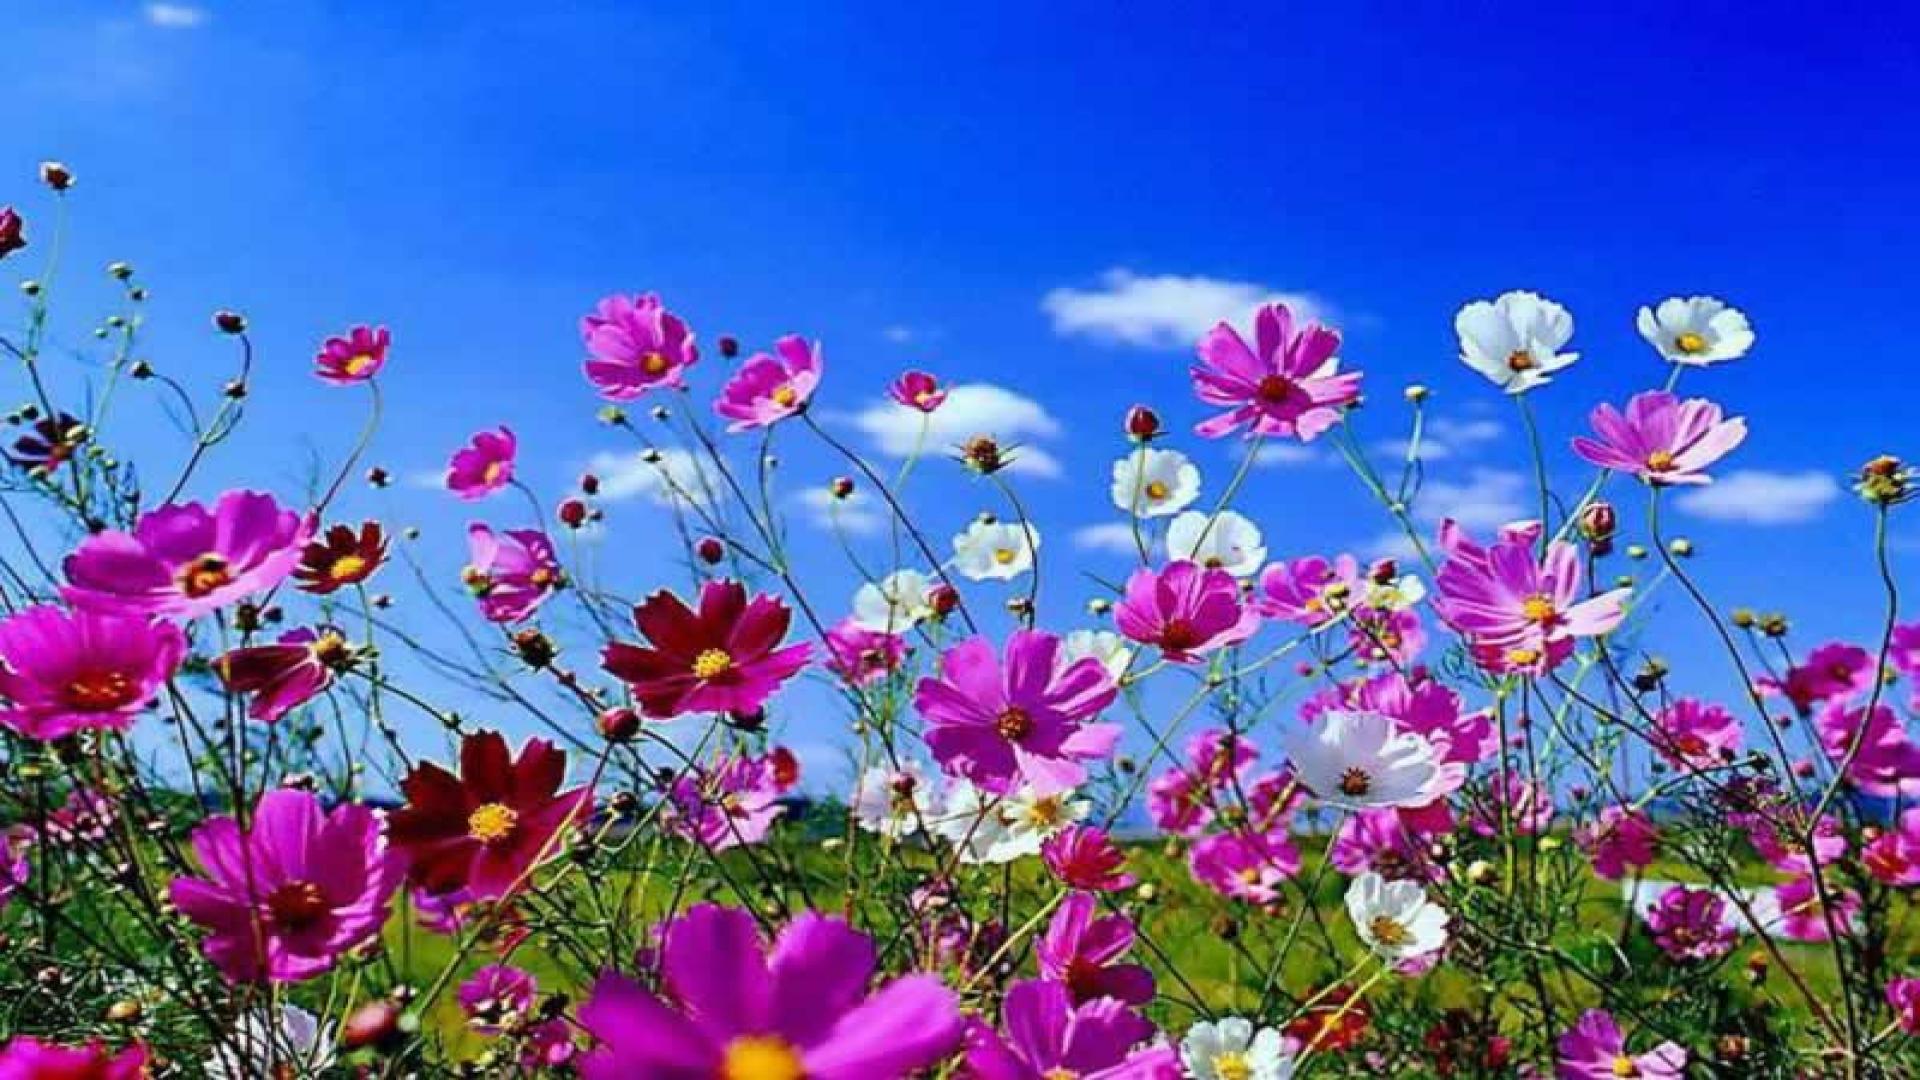 free desktop spring flowers hd wallpaper for your desktop background